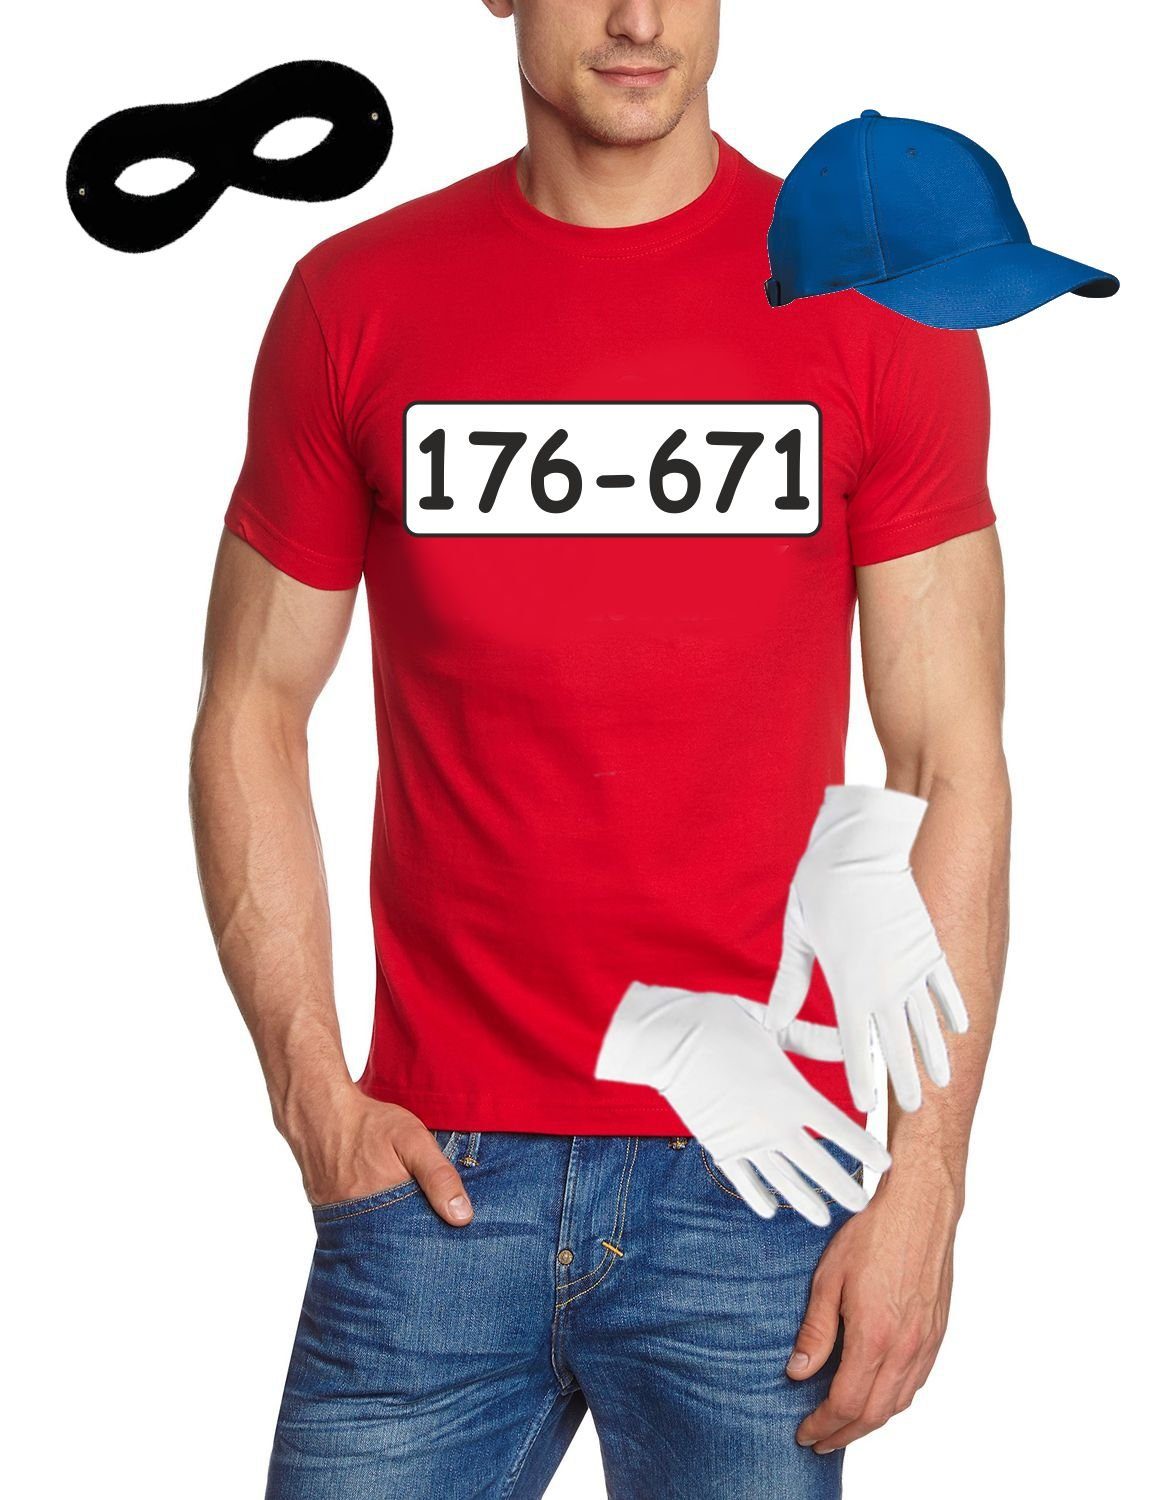 coole-fun-t-shirts Kostüm »Set Gangster Bande KOSTÜM - Fasching - Karneval  - T-Shirt, MÜTZE, Maske + Handschuhe - rot Gr. S M L XL XXL 3XL 4XL 5XL«